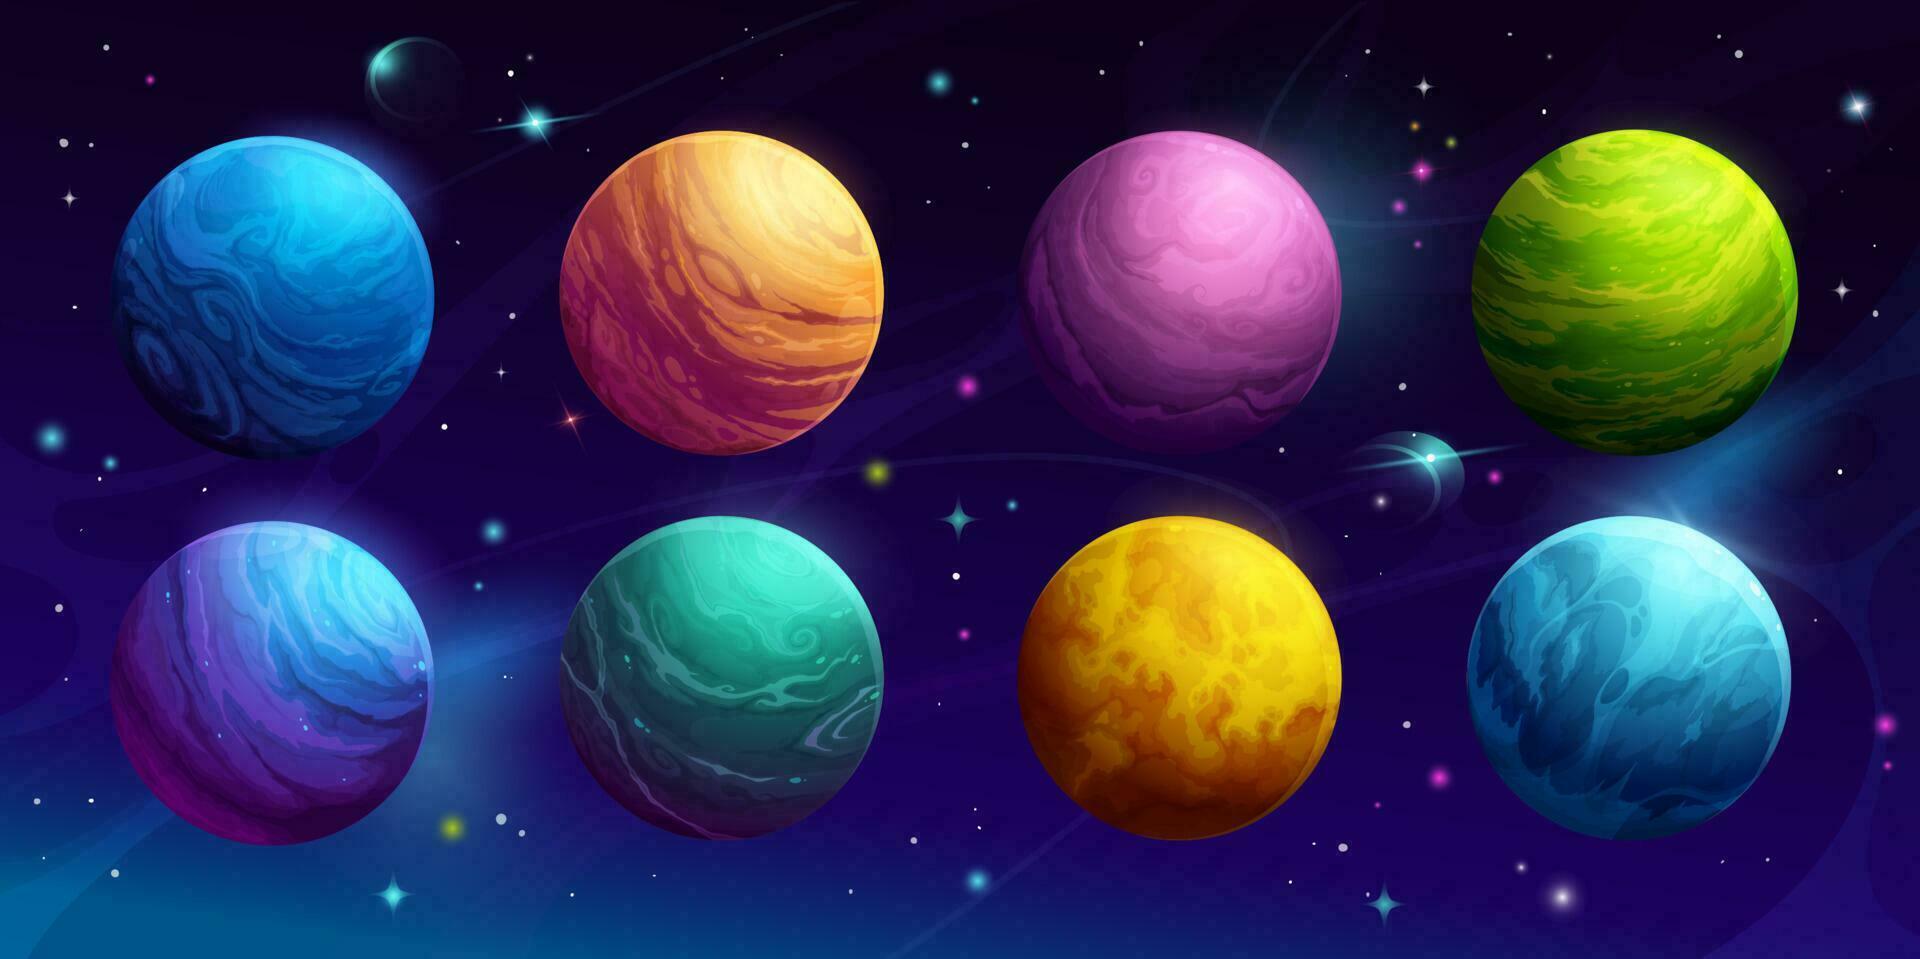 dibujos animados espacio planetas, galaxia cielo fantasía mundo vector